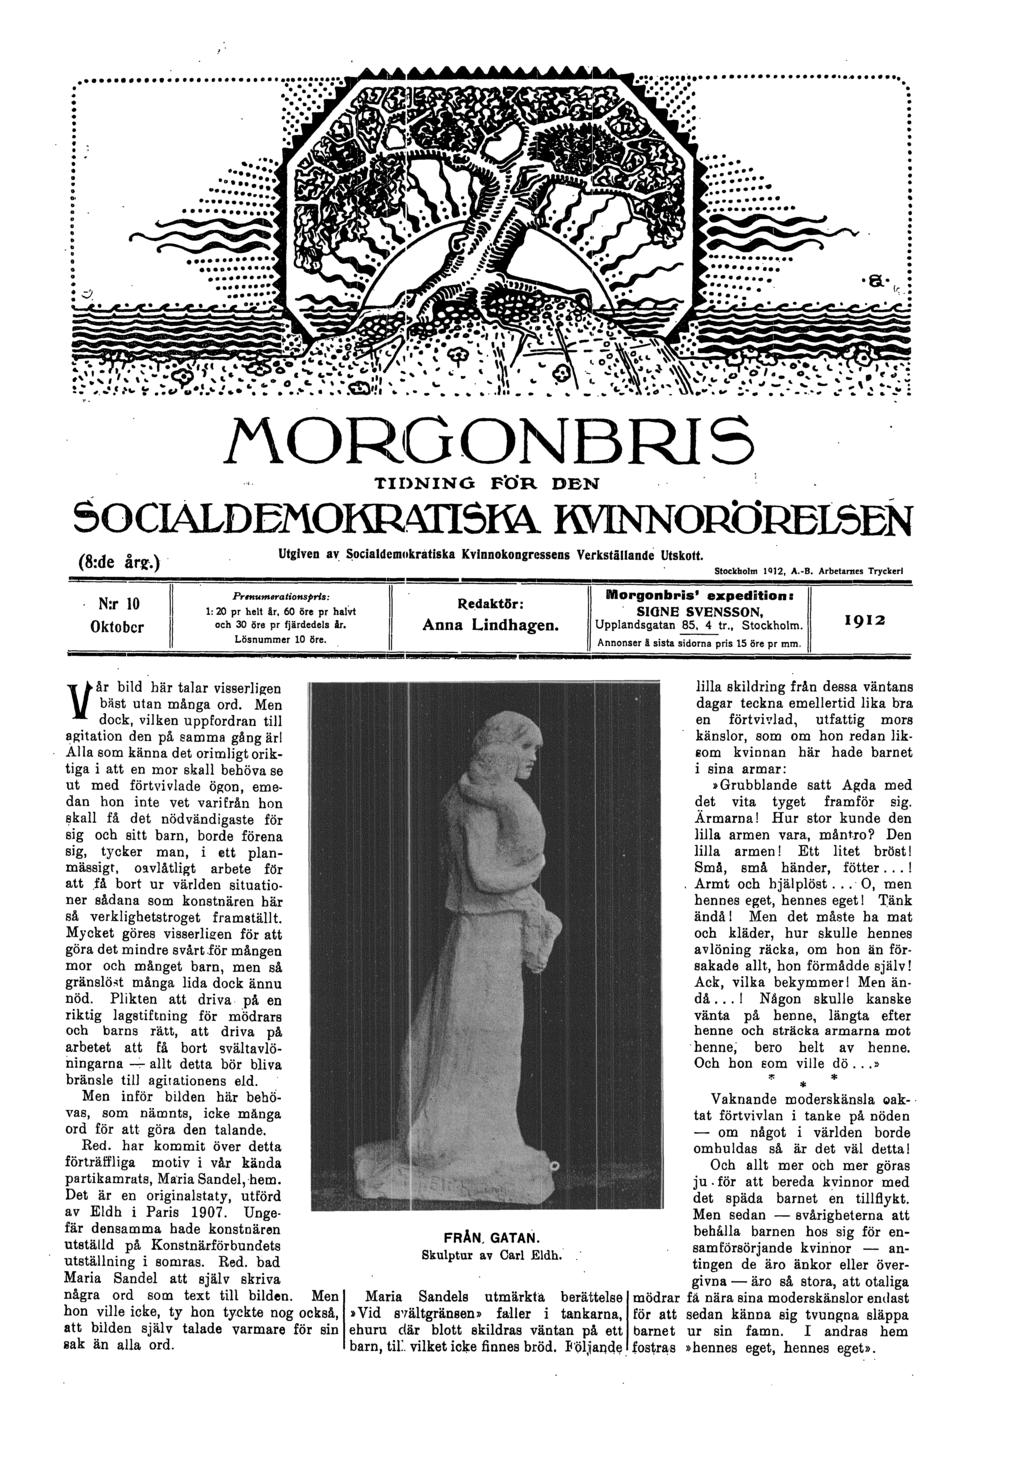 GONBRIS.i. TI1)NING FUR DEN ($:de ir.g.) N:r10 // Oktober /l Utgiven av Socialdemokratiska Kvlnnokongressens ~e.rkställande Utskott. Stockholm 1912, A.-B.